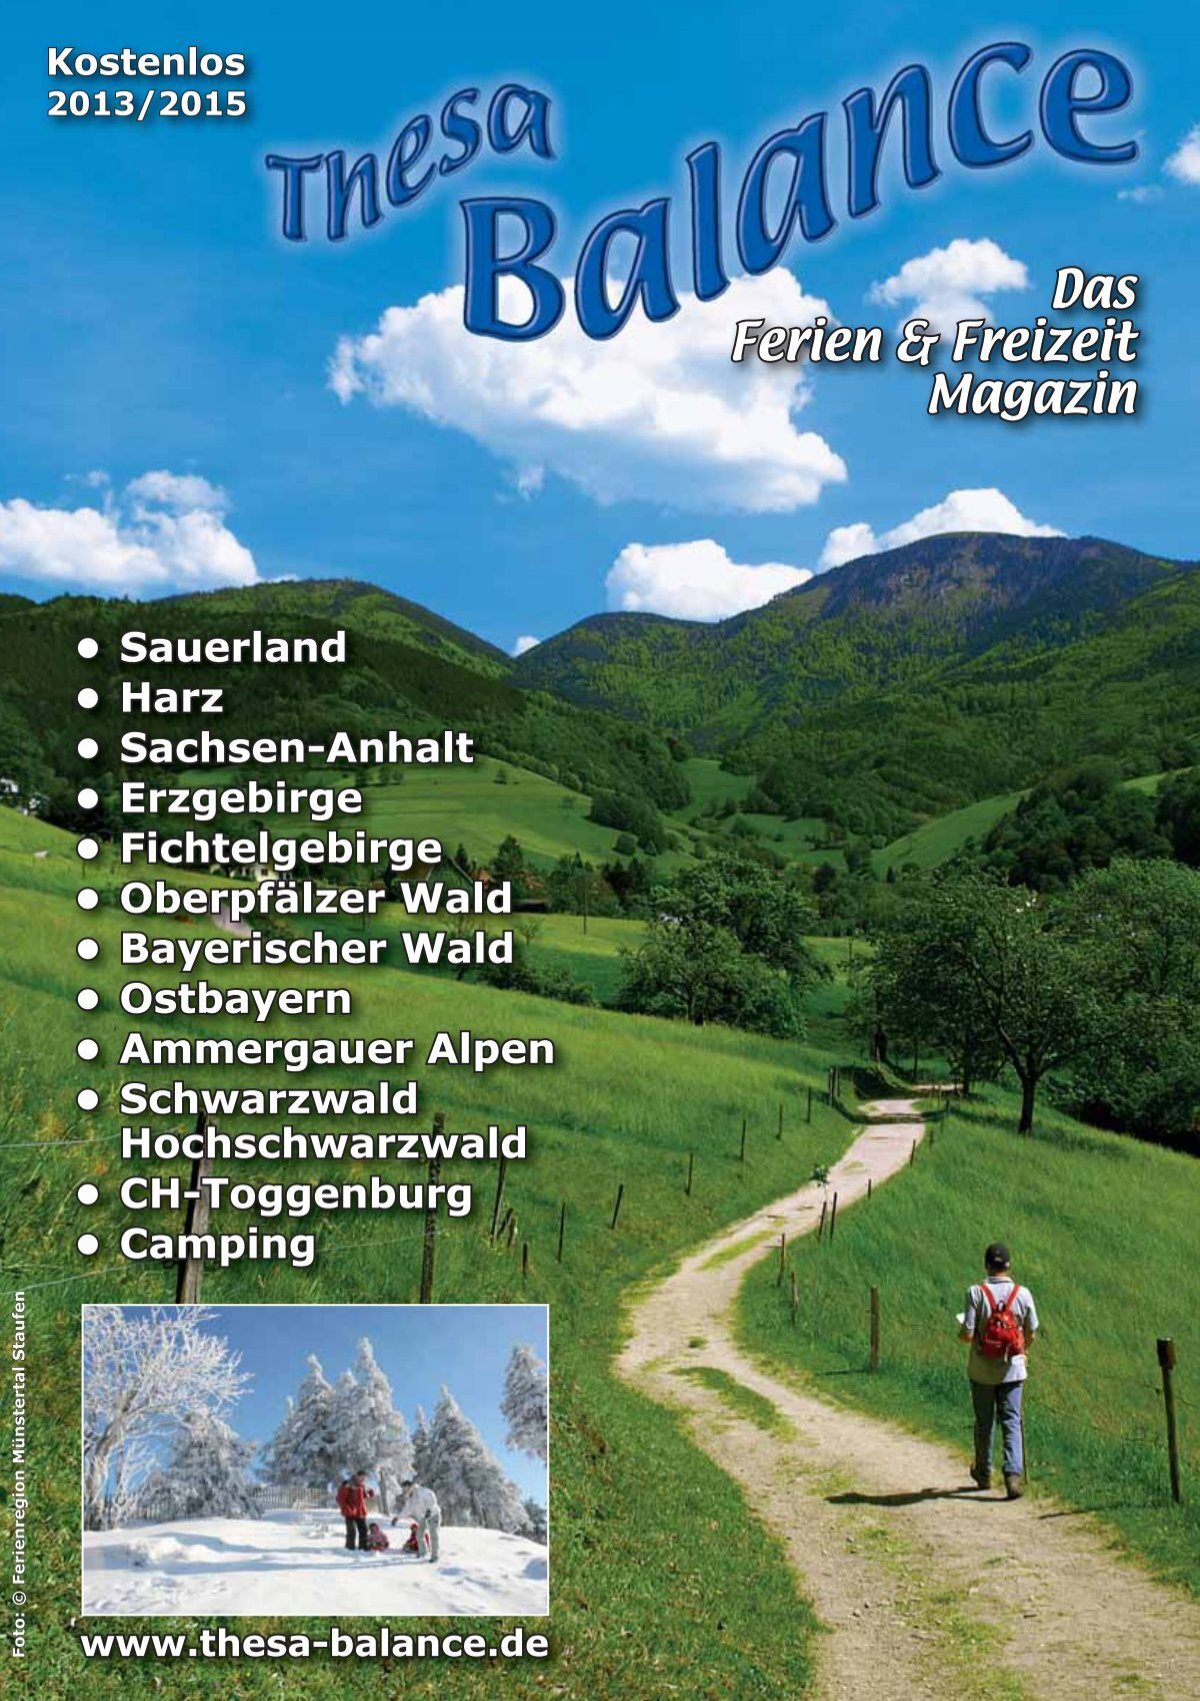 Das Ferien & Freizeit Magazin - Thesa-Balance - Das Ferien- und